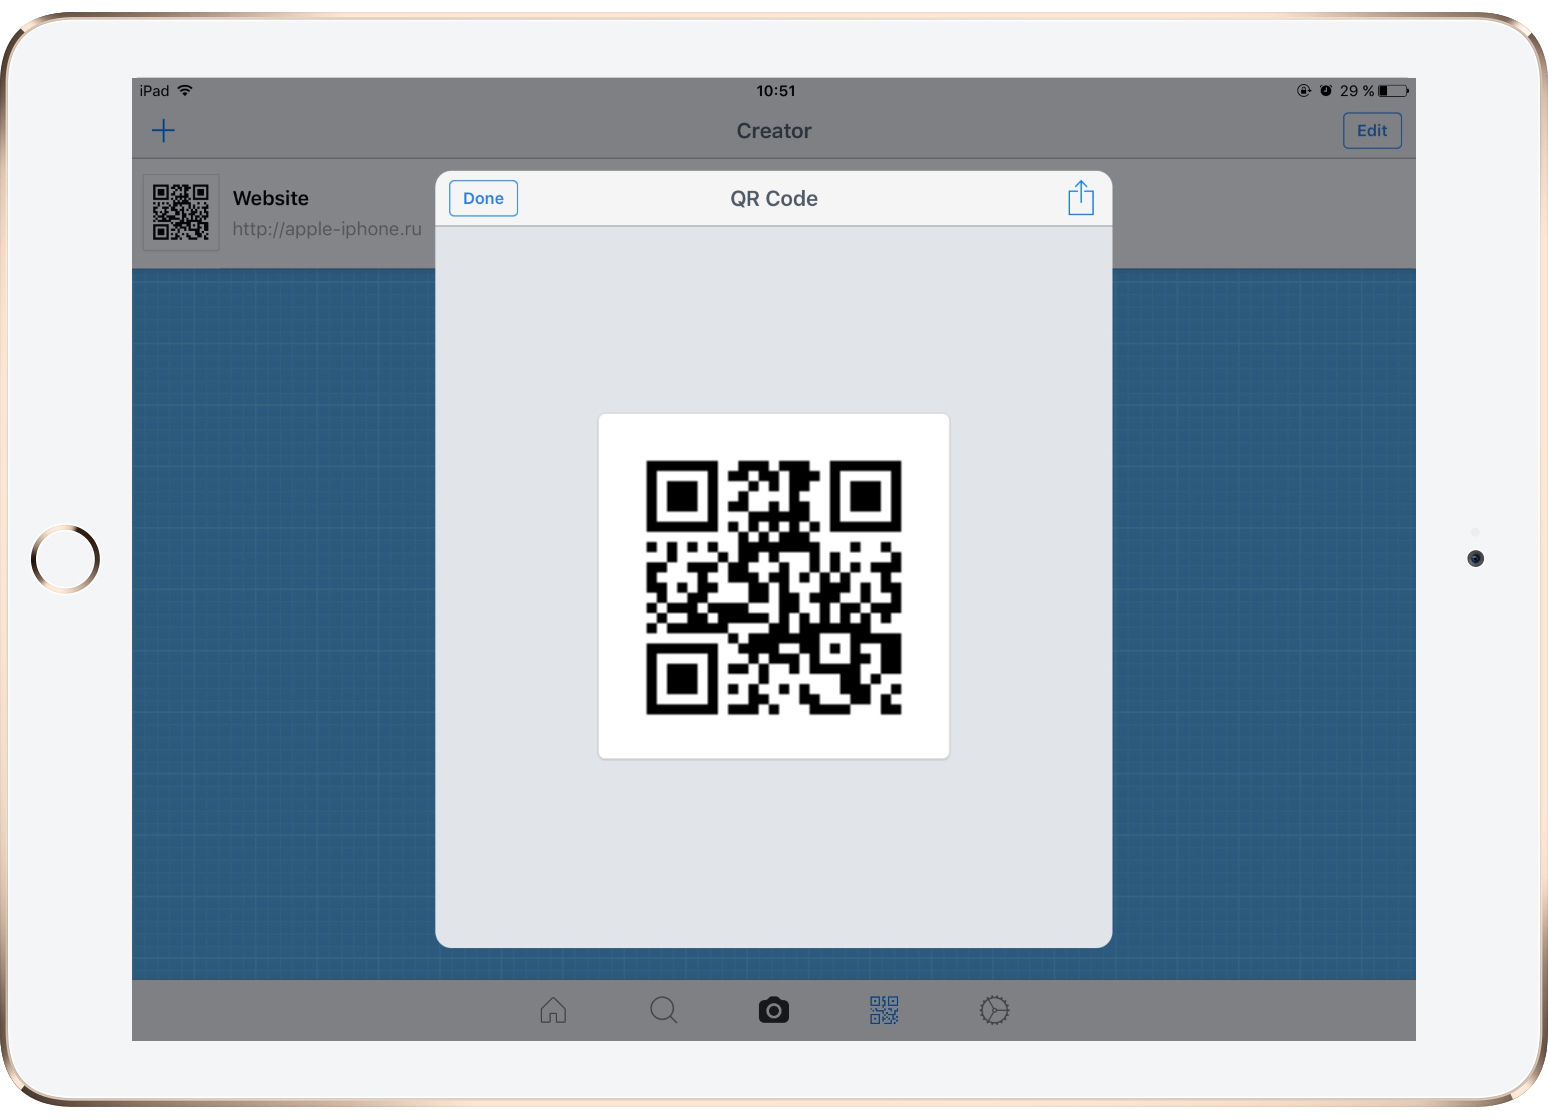 Hvordan kan det считывать и создавать QR-коды на iPhone и iPad